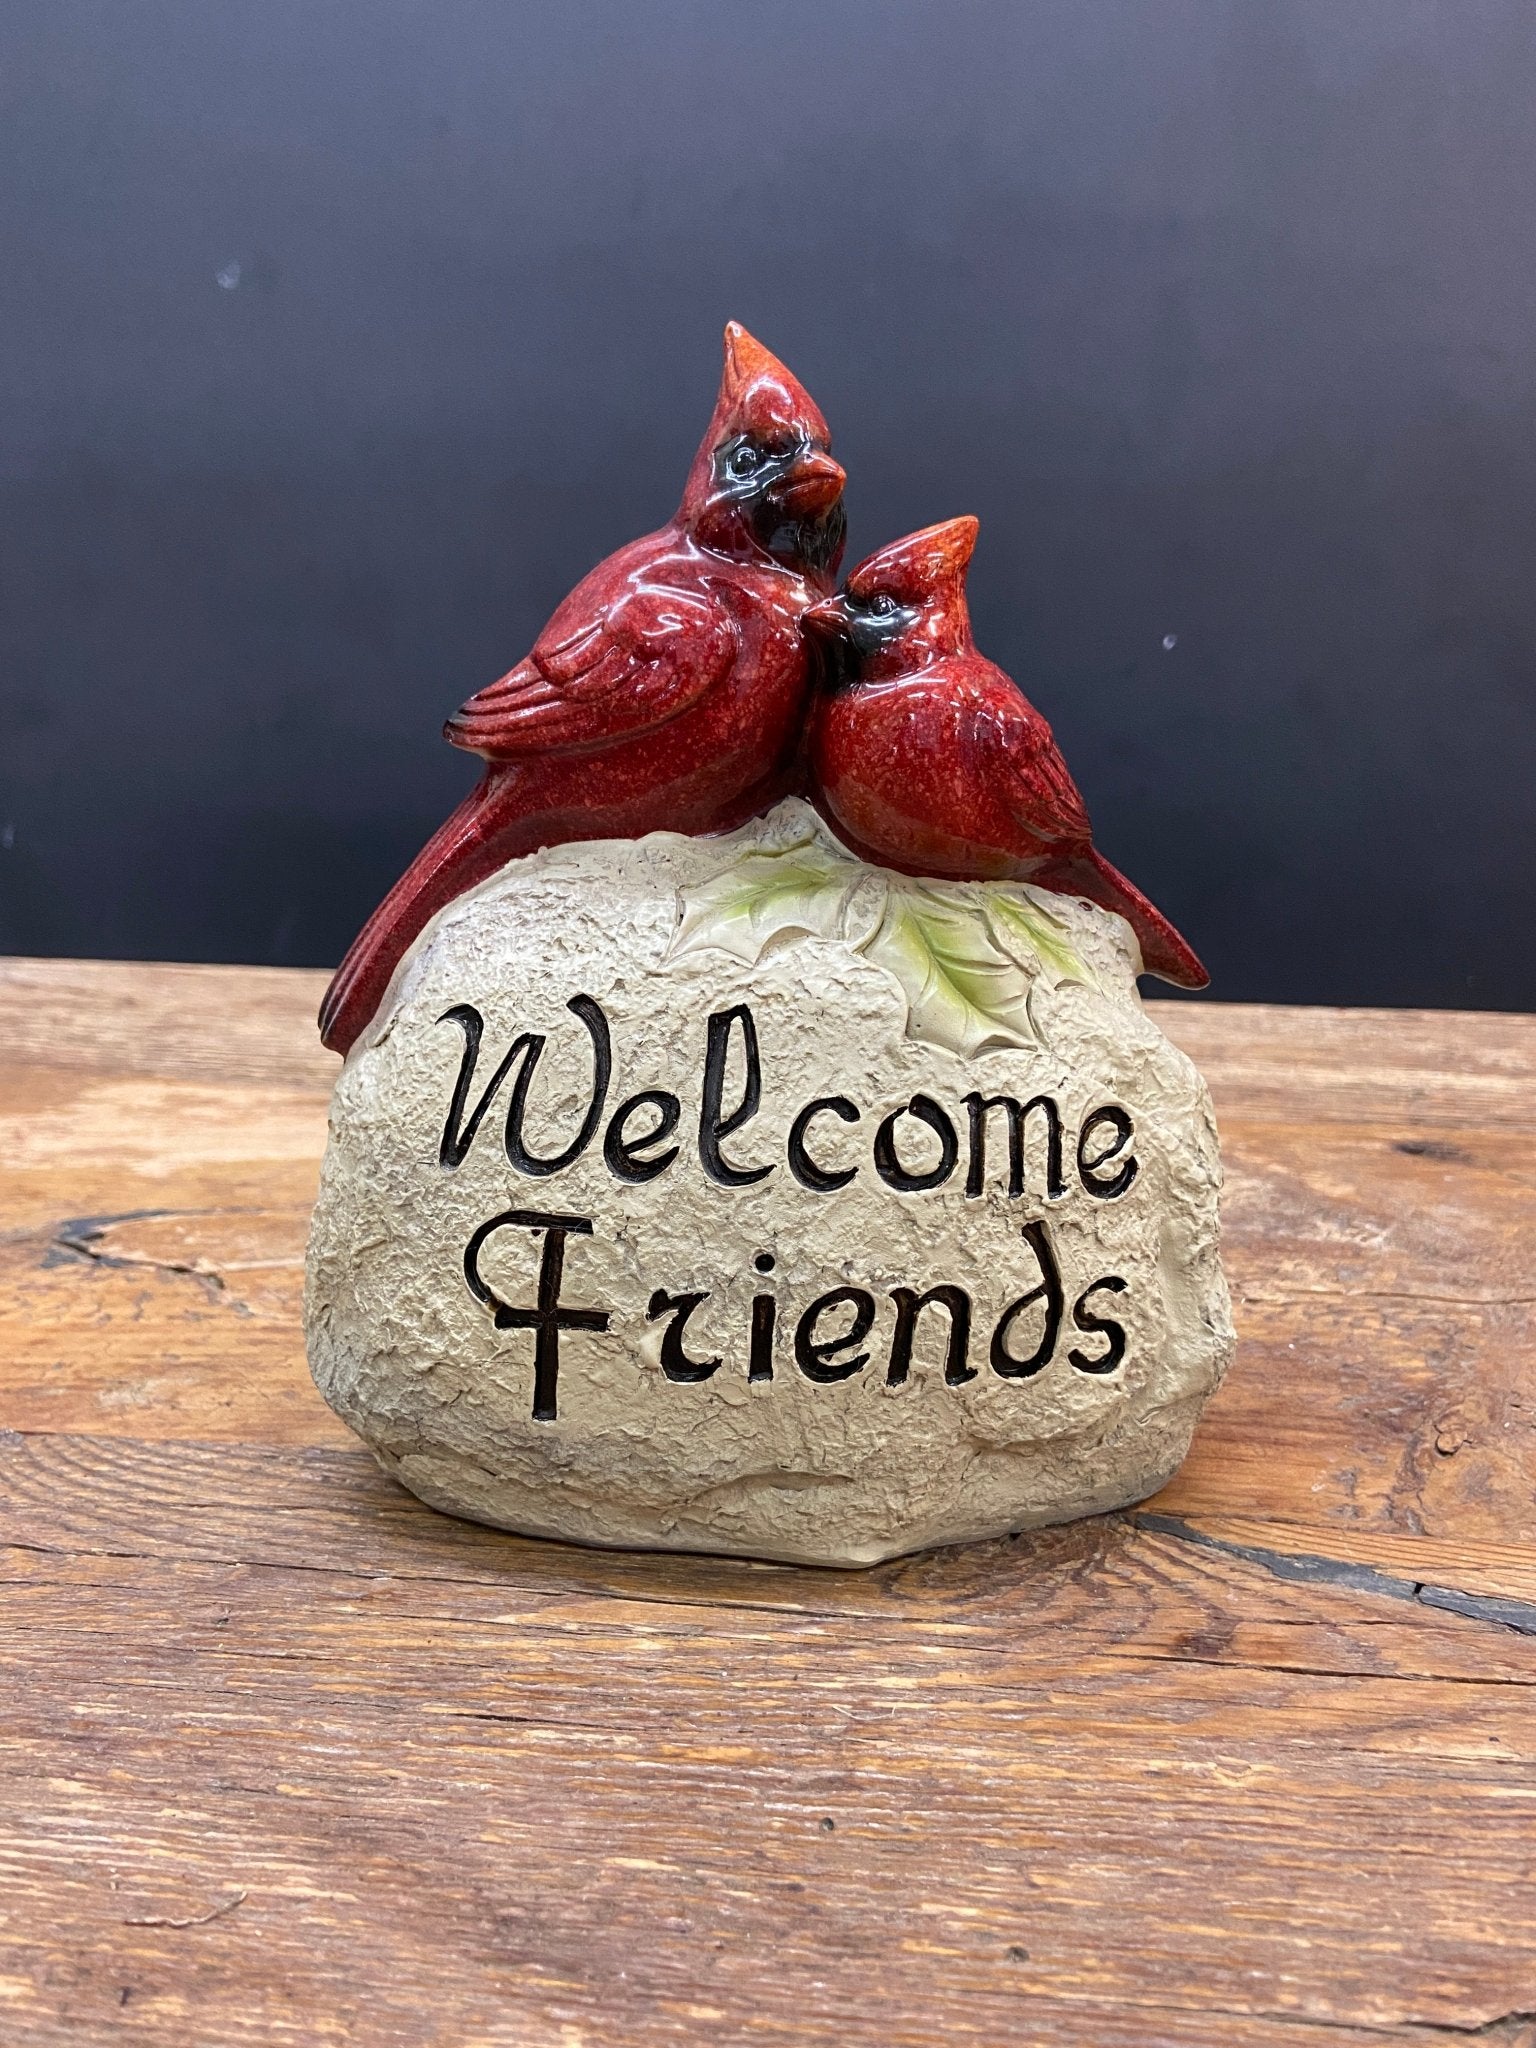 Welcome Friends - Satellite Garden Centre